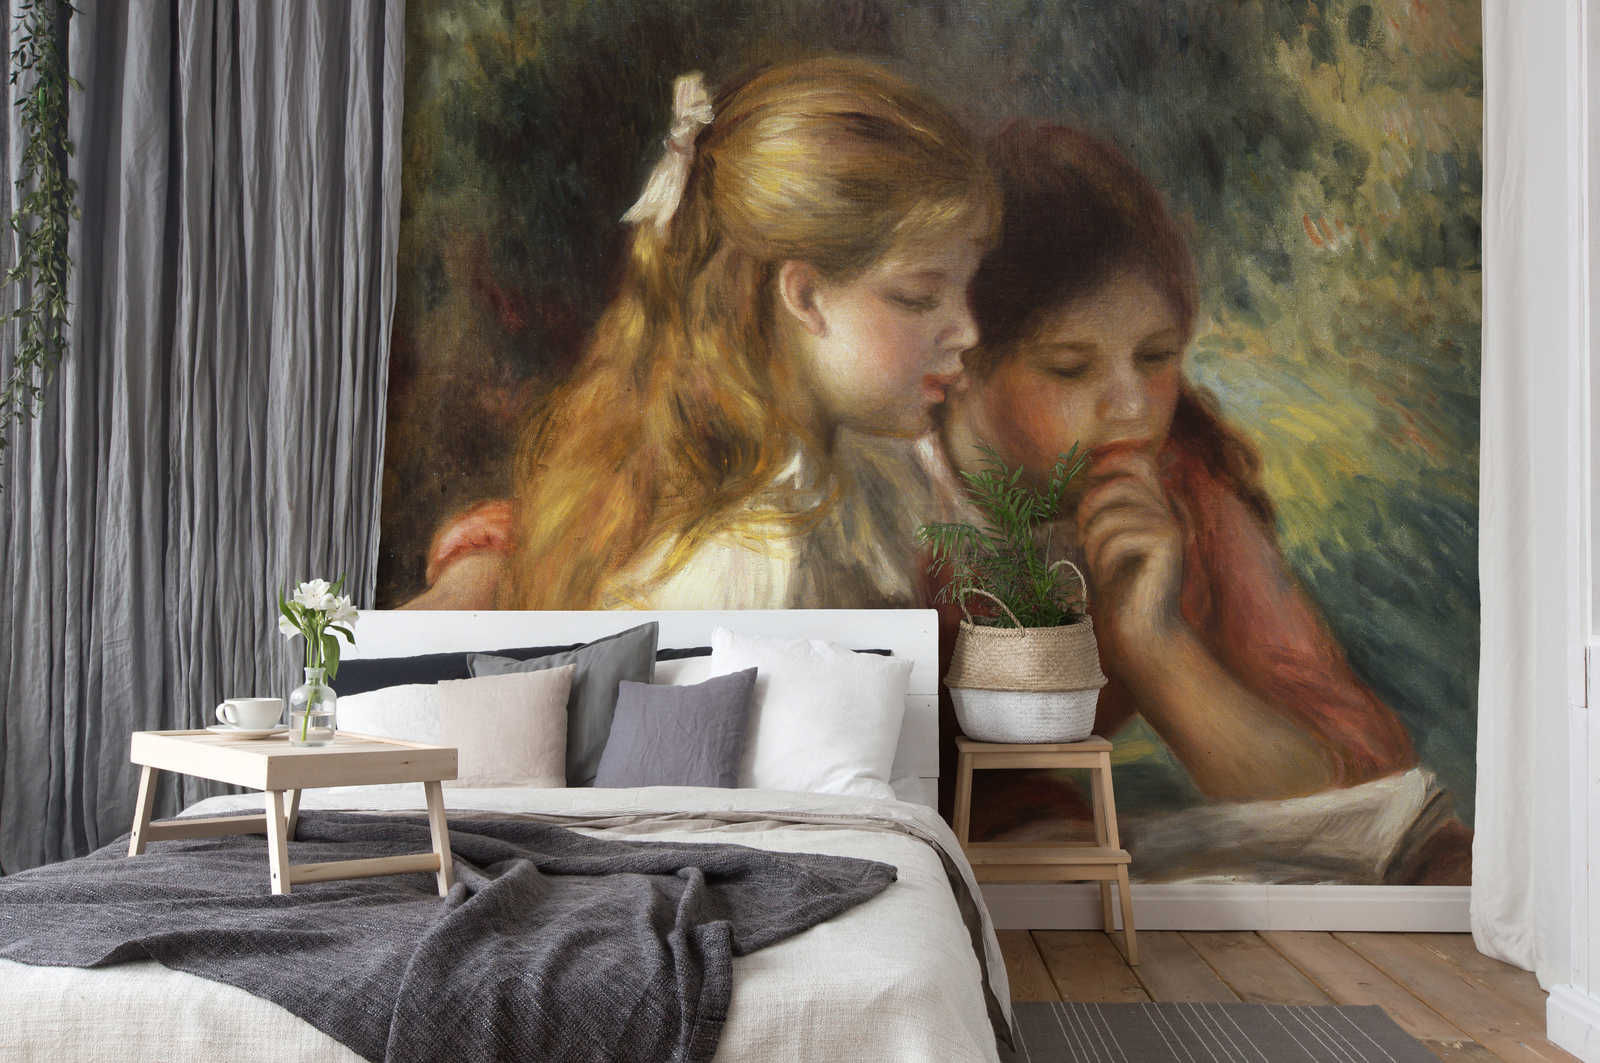             Mural "La lectura" de Pierre Auguste Renoir
        